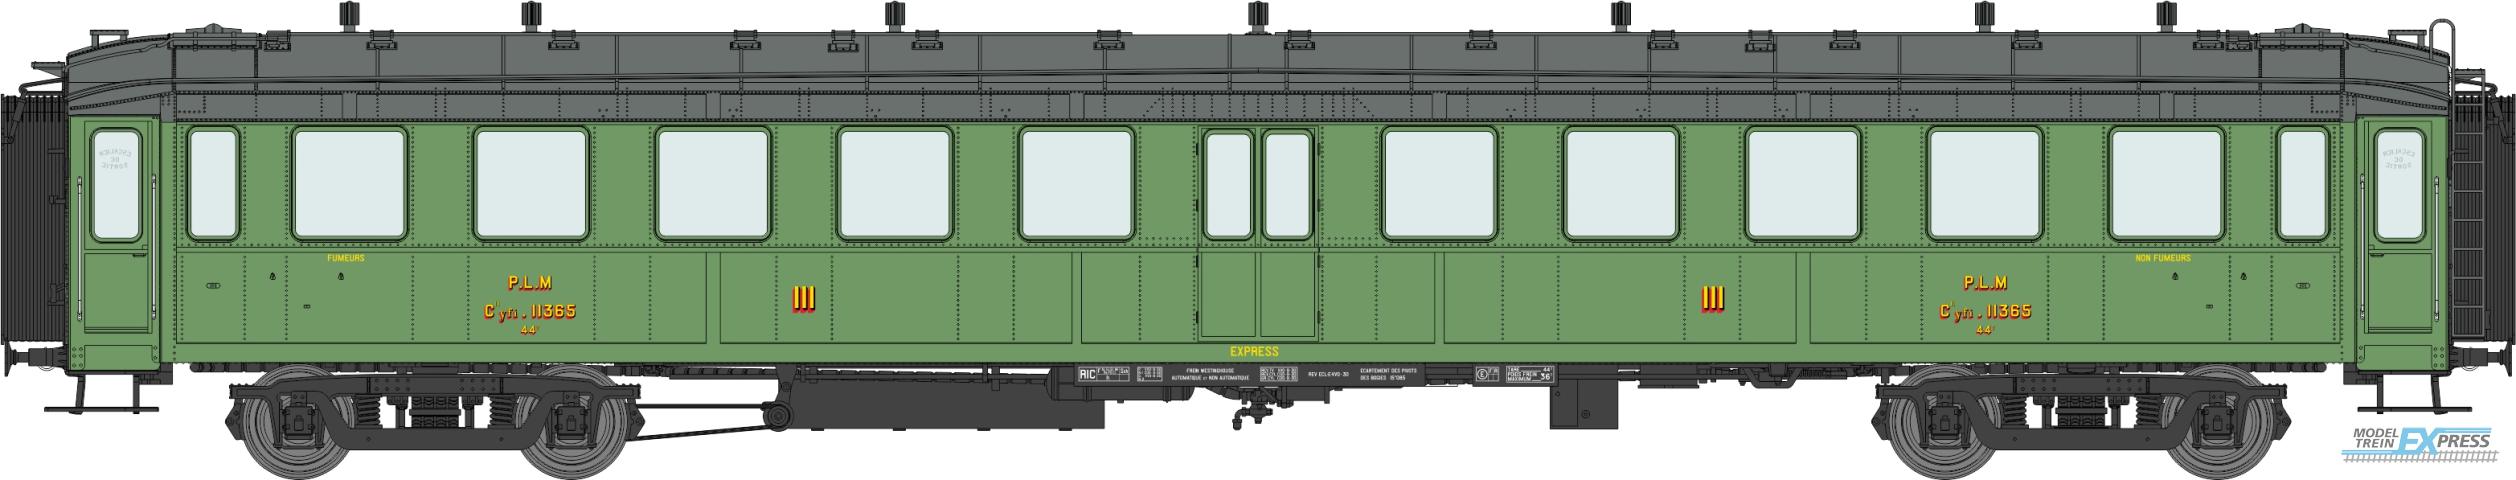 REE models VB-366 BACALAN Coach 3rd class C11yfi 11365 PLM Ep.II